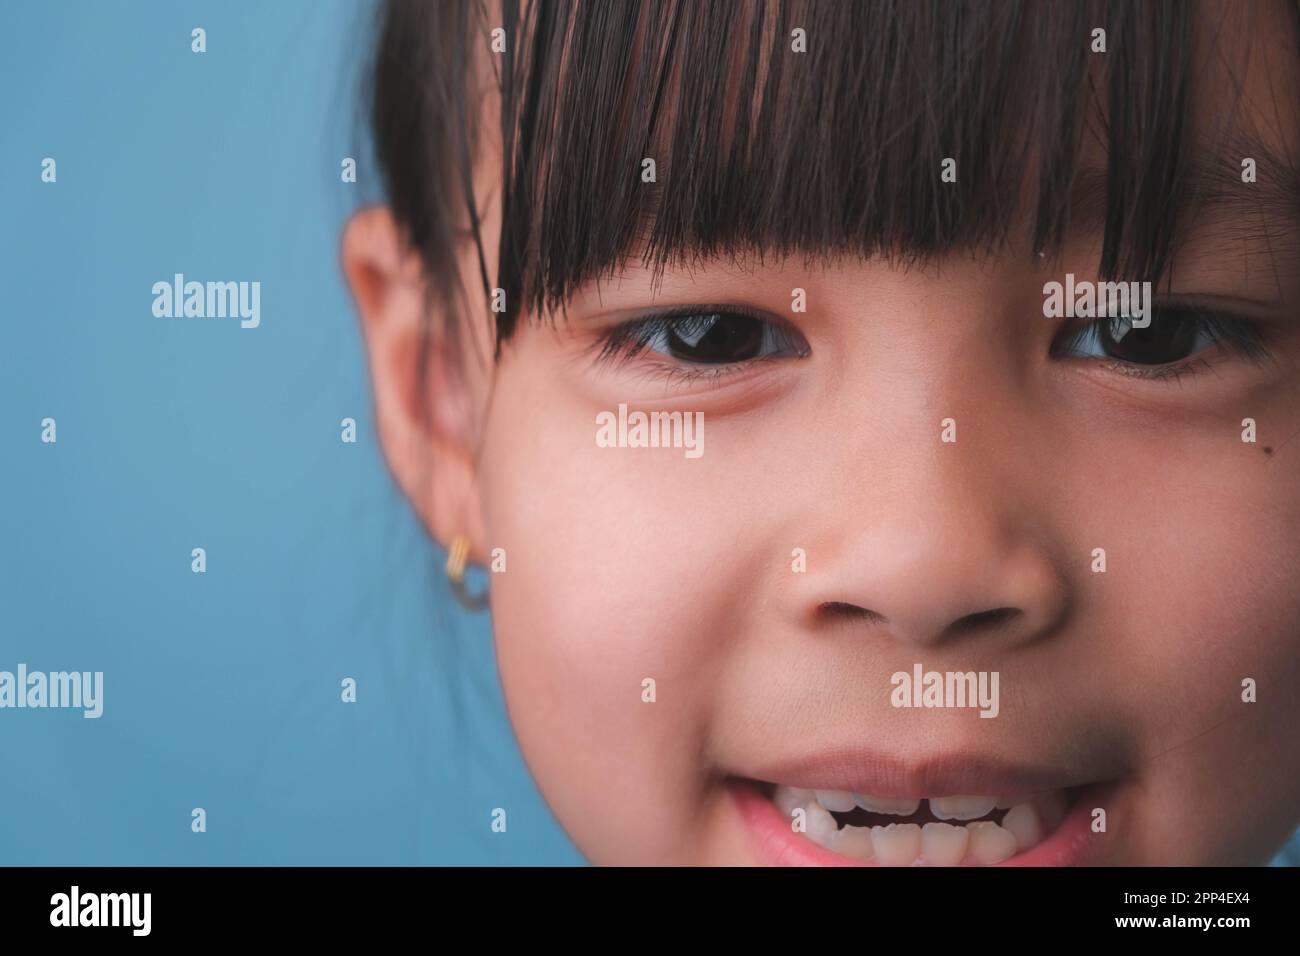 Ritratto di una bambina sorridente che guarda la fotocamera. Primo piano di cute ragazza asiatica faccia posa su sfondo blu. Foto Stock